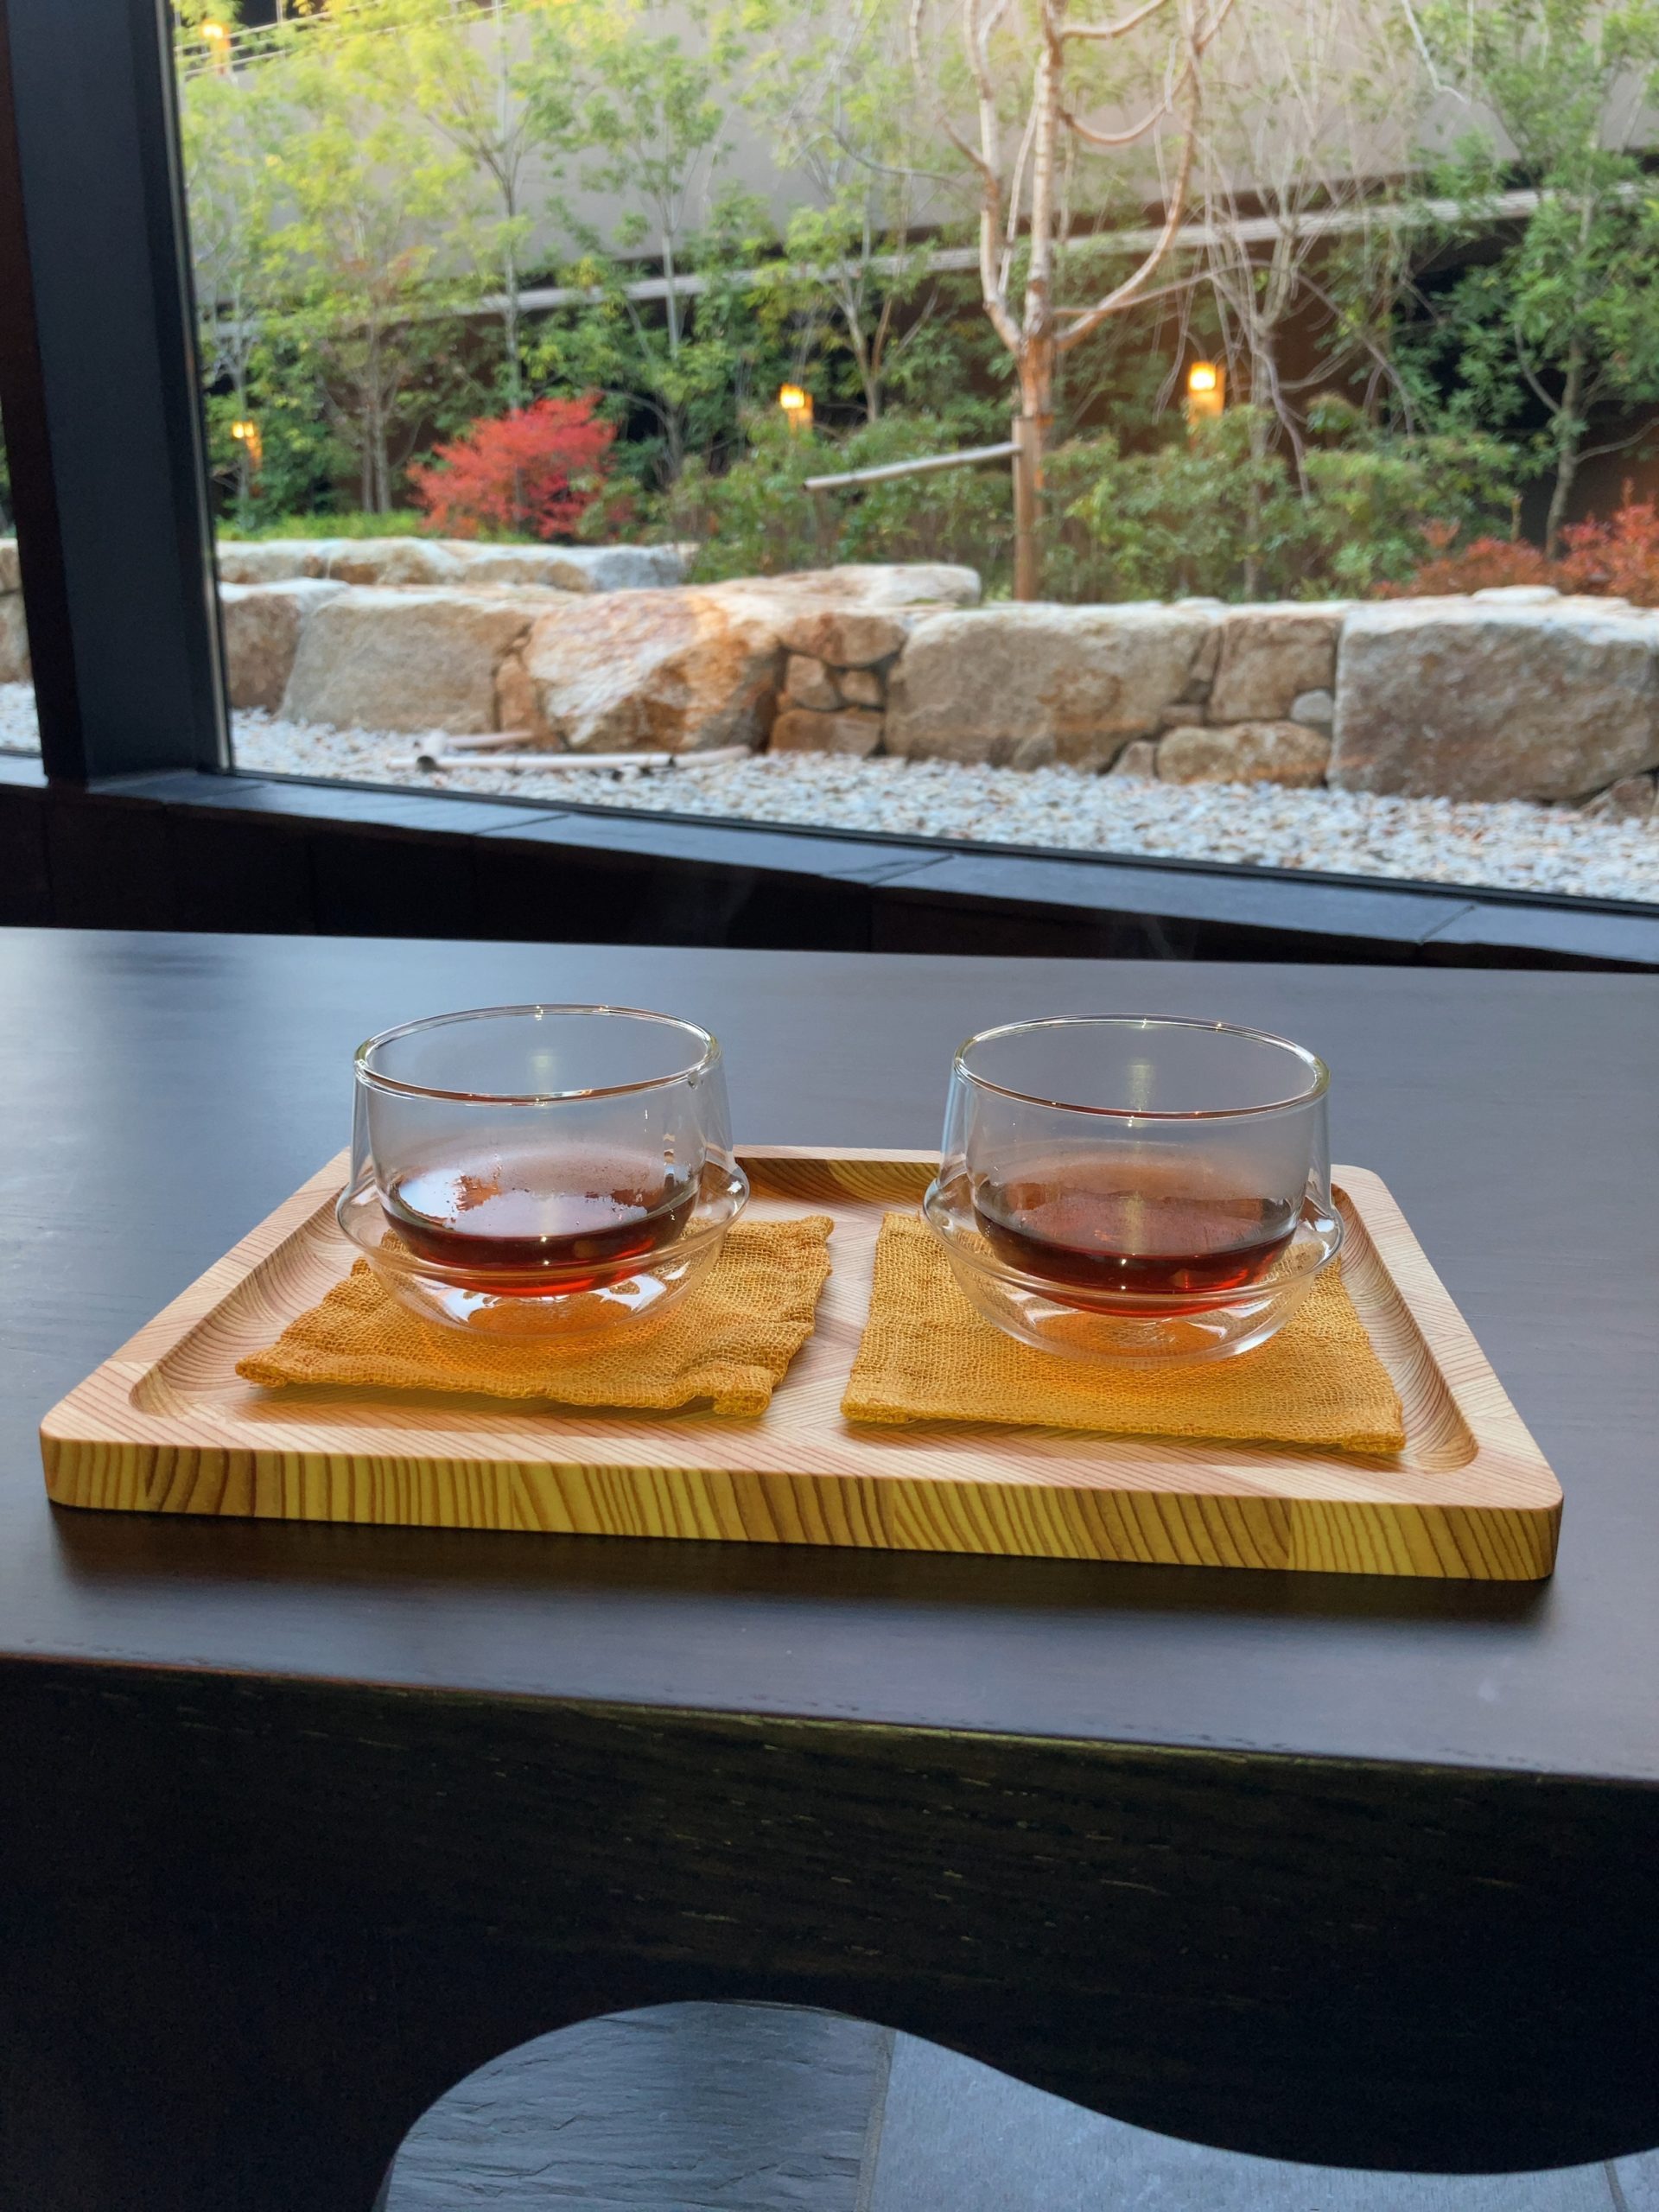 「ふふ奈良」でチェックイン時に出されたお茶の写真